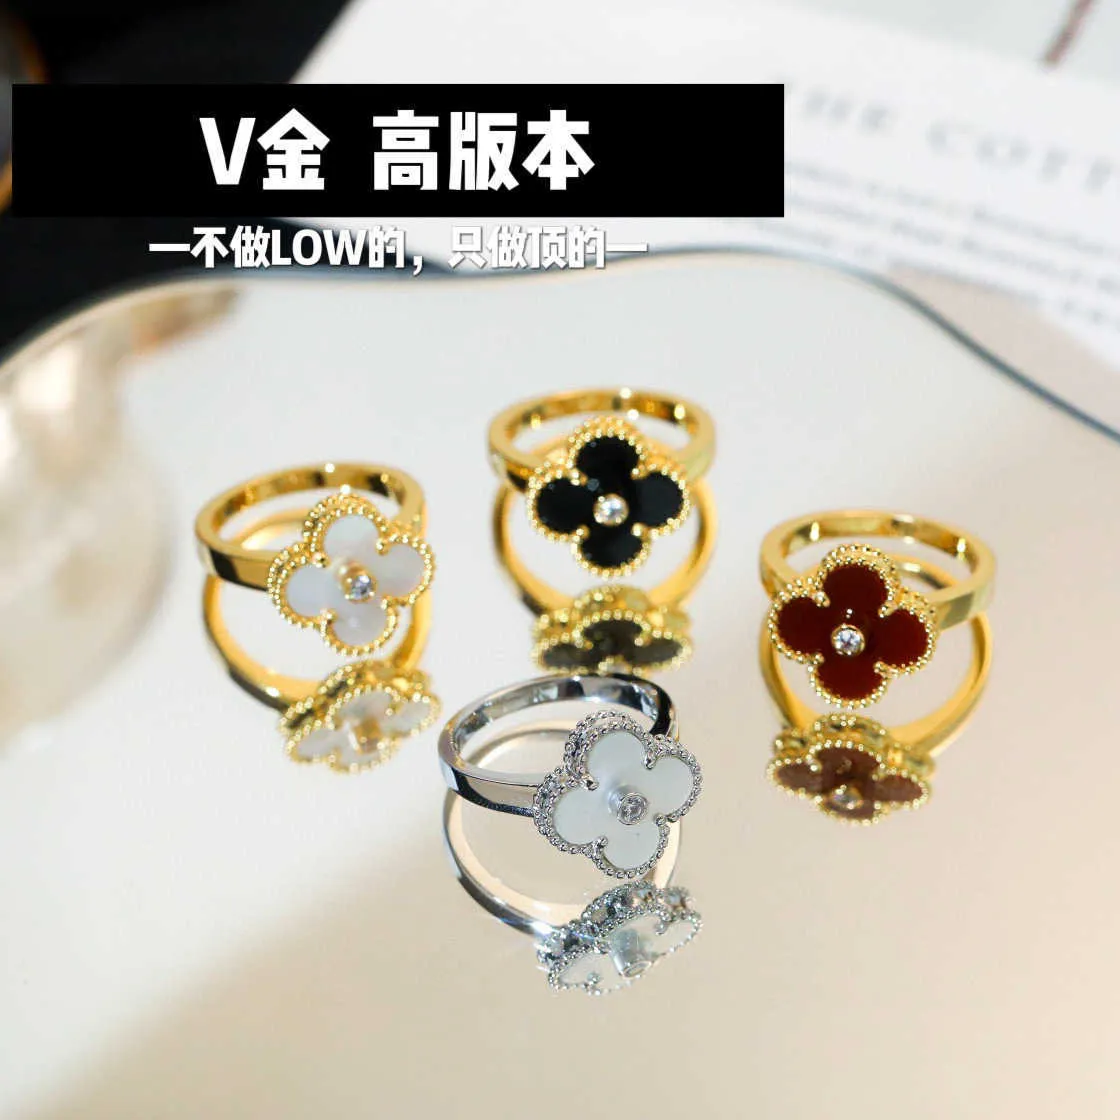 Designer Brand v Gold Spesso Van a trifoglio Mijin da 18K con fitillaria bianca diamante gioiello ad anello di agata nera con logo